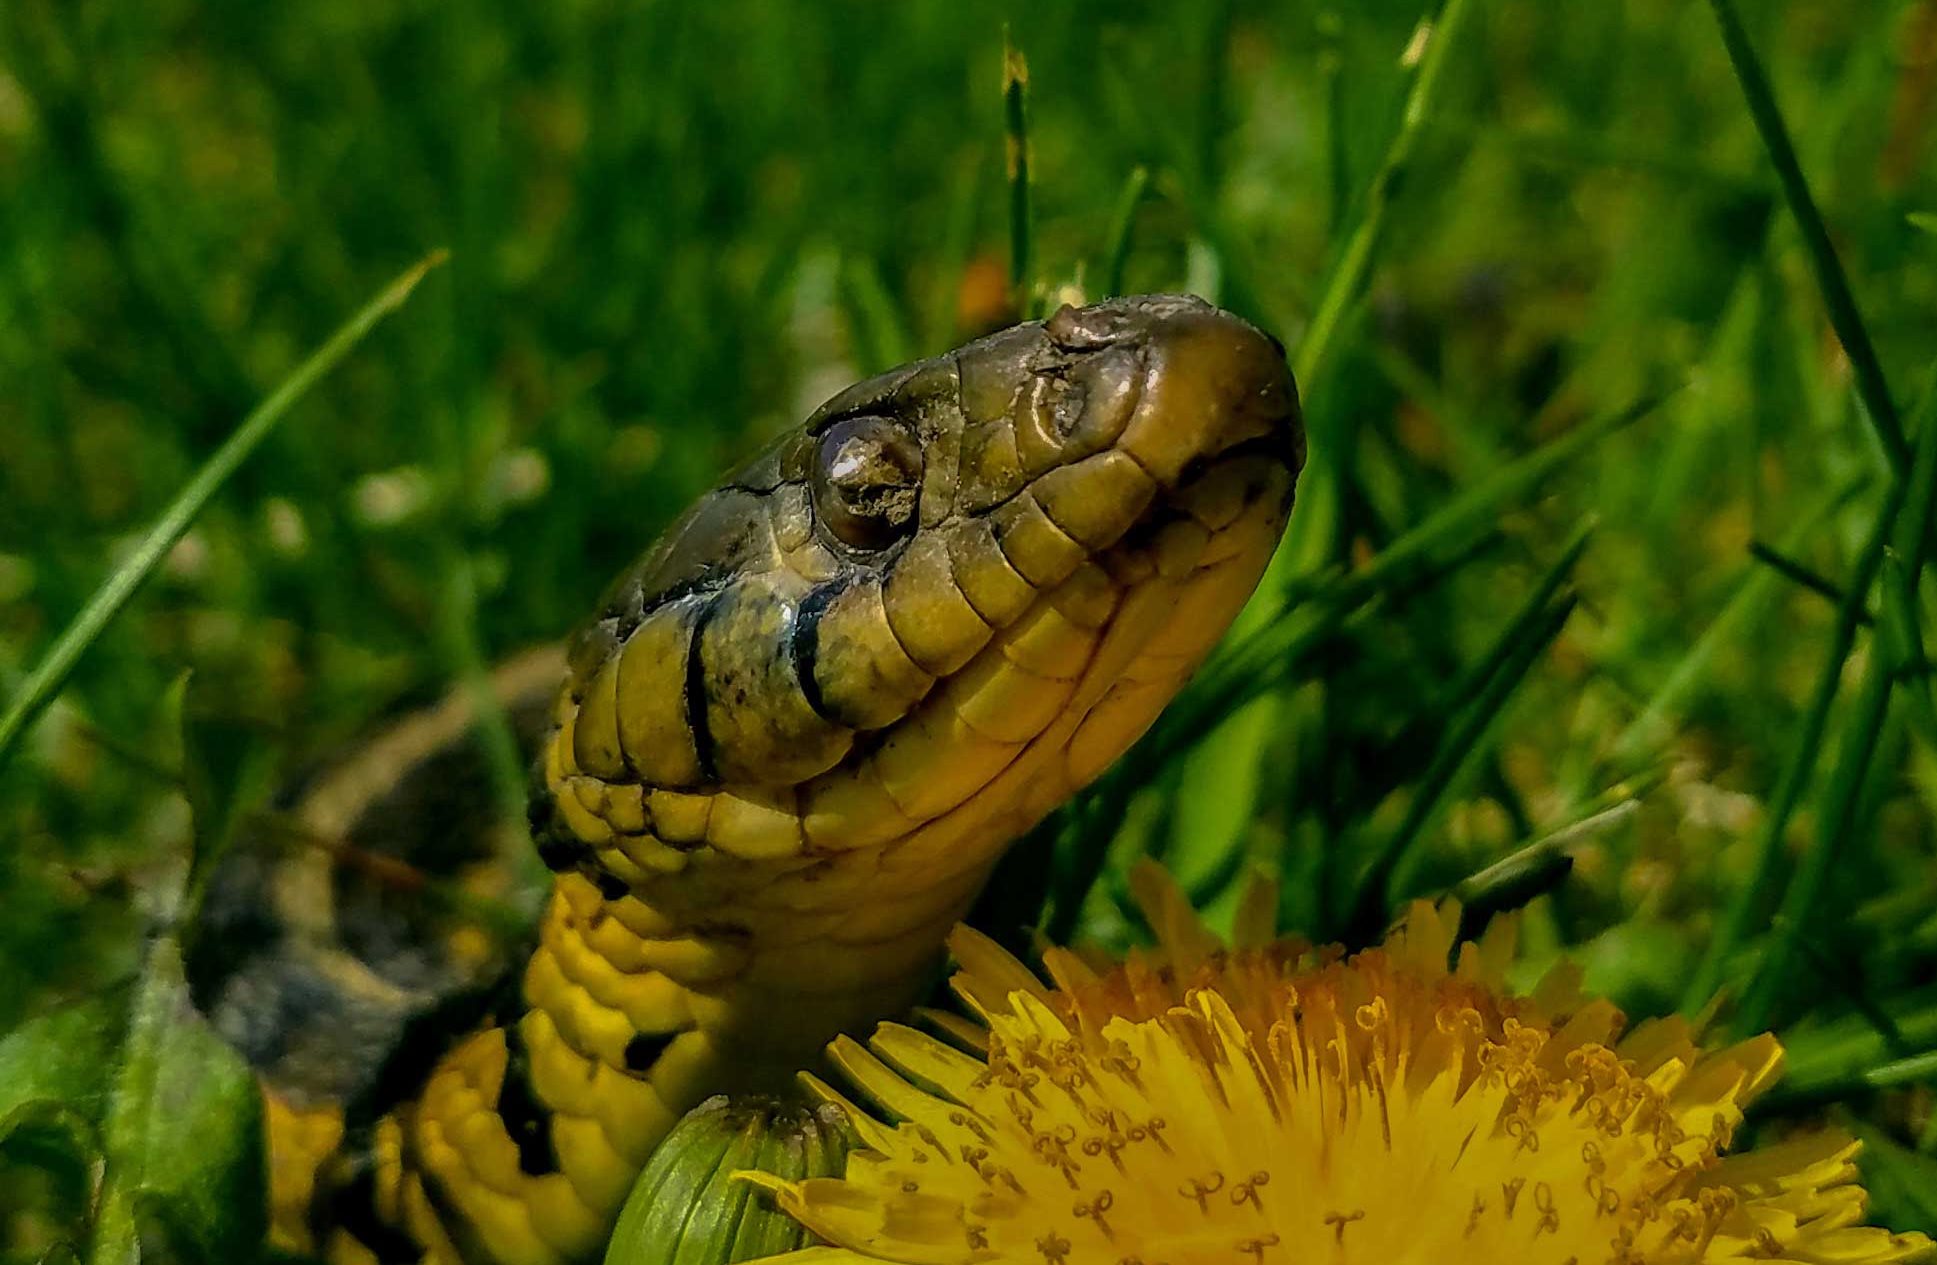 Close-up of a garter snake.